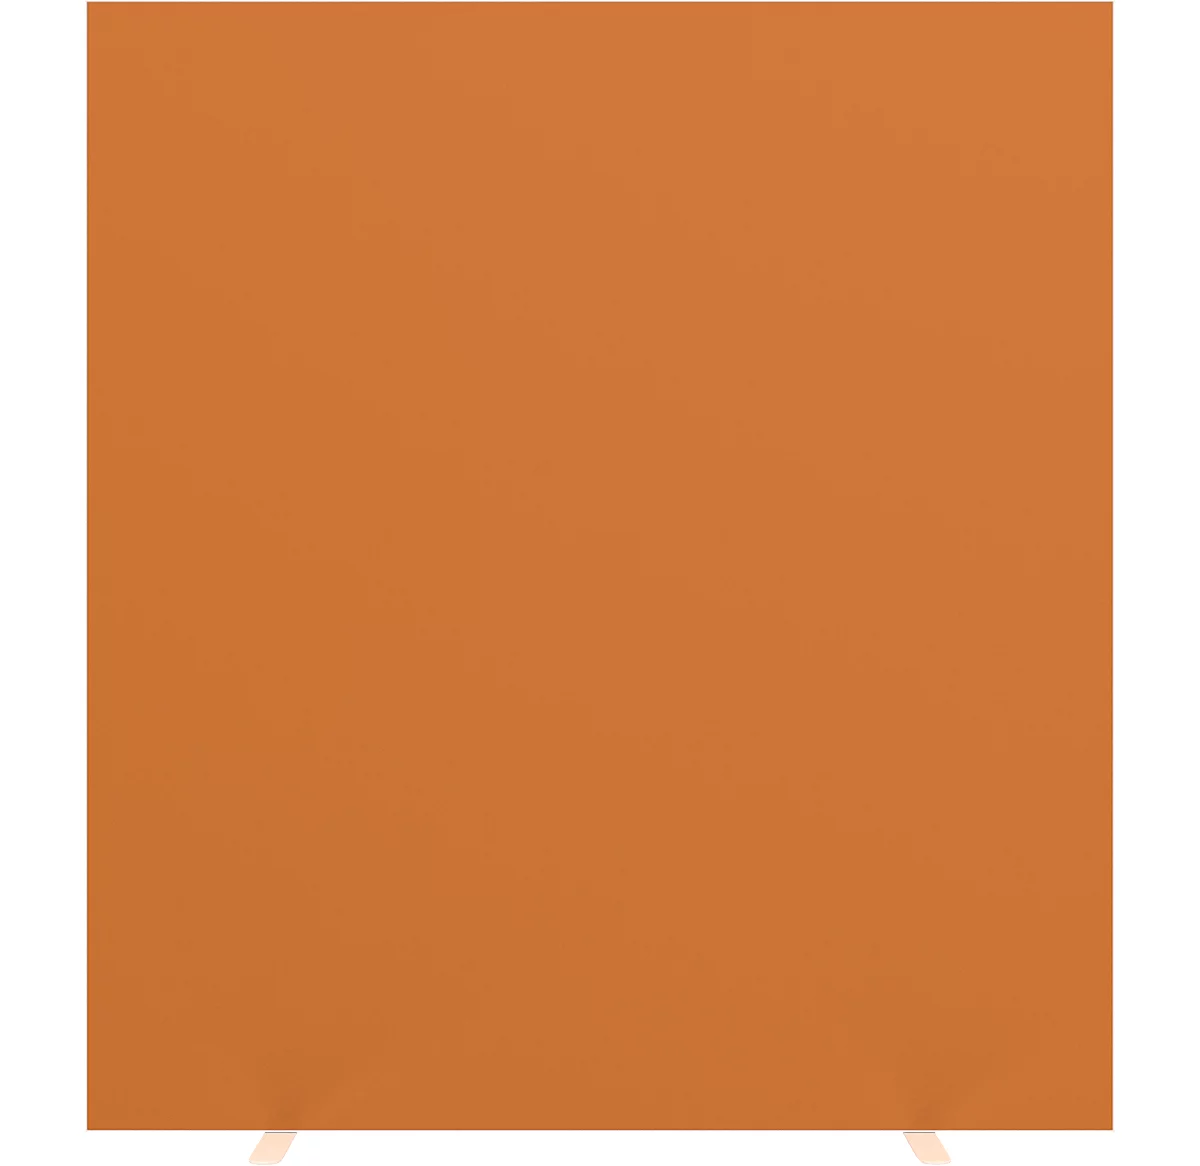 Design-Trennwand Paperflow, Stoffbespannung orange, schwer entflammbar gemäß DIN 4102 (B1), desinfektionsmittelbeständig, B 1600 x T 390 x H 1740 mm